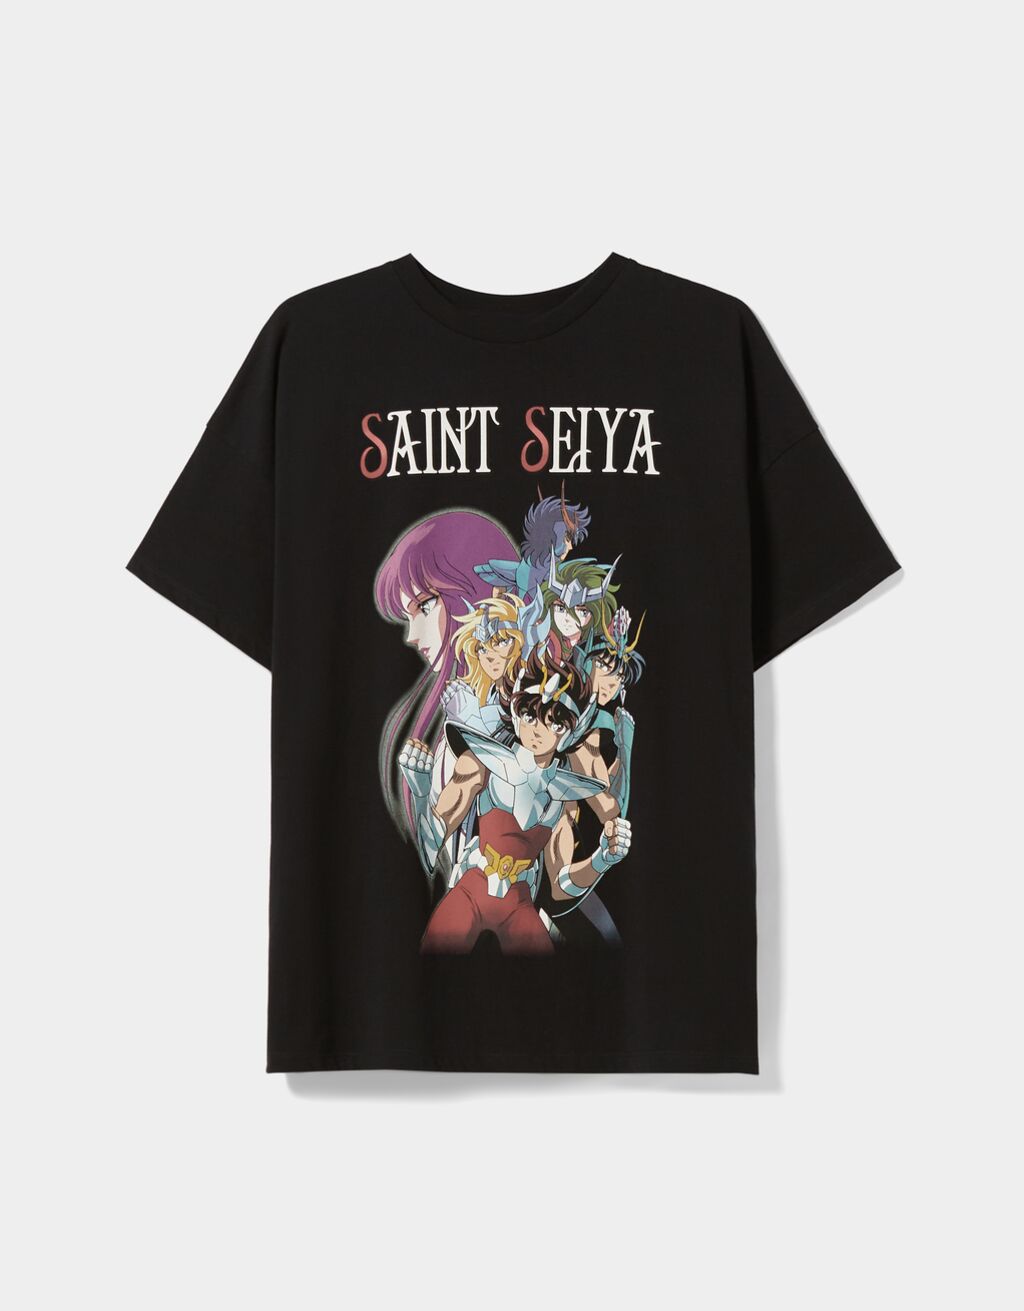 Tričko s krátkými rukávy a potiskem Saint Seiya